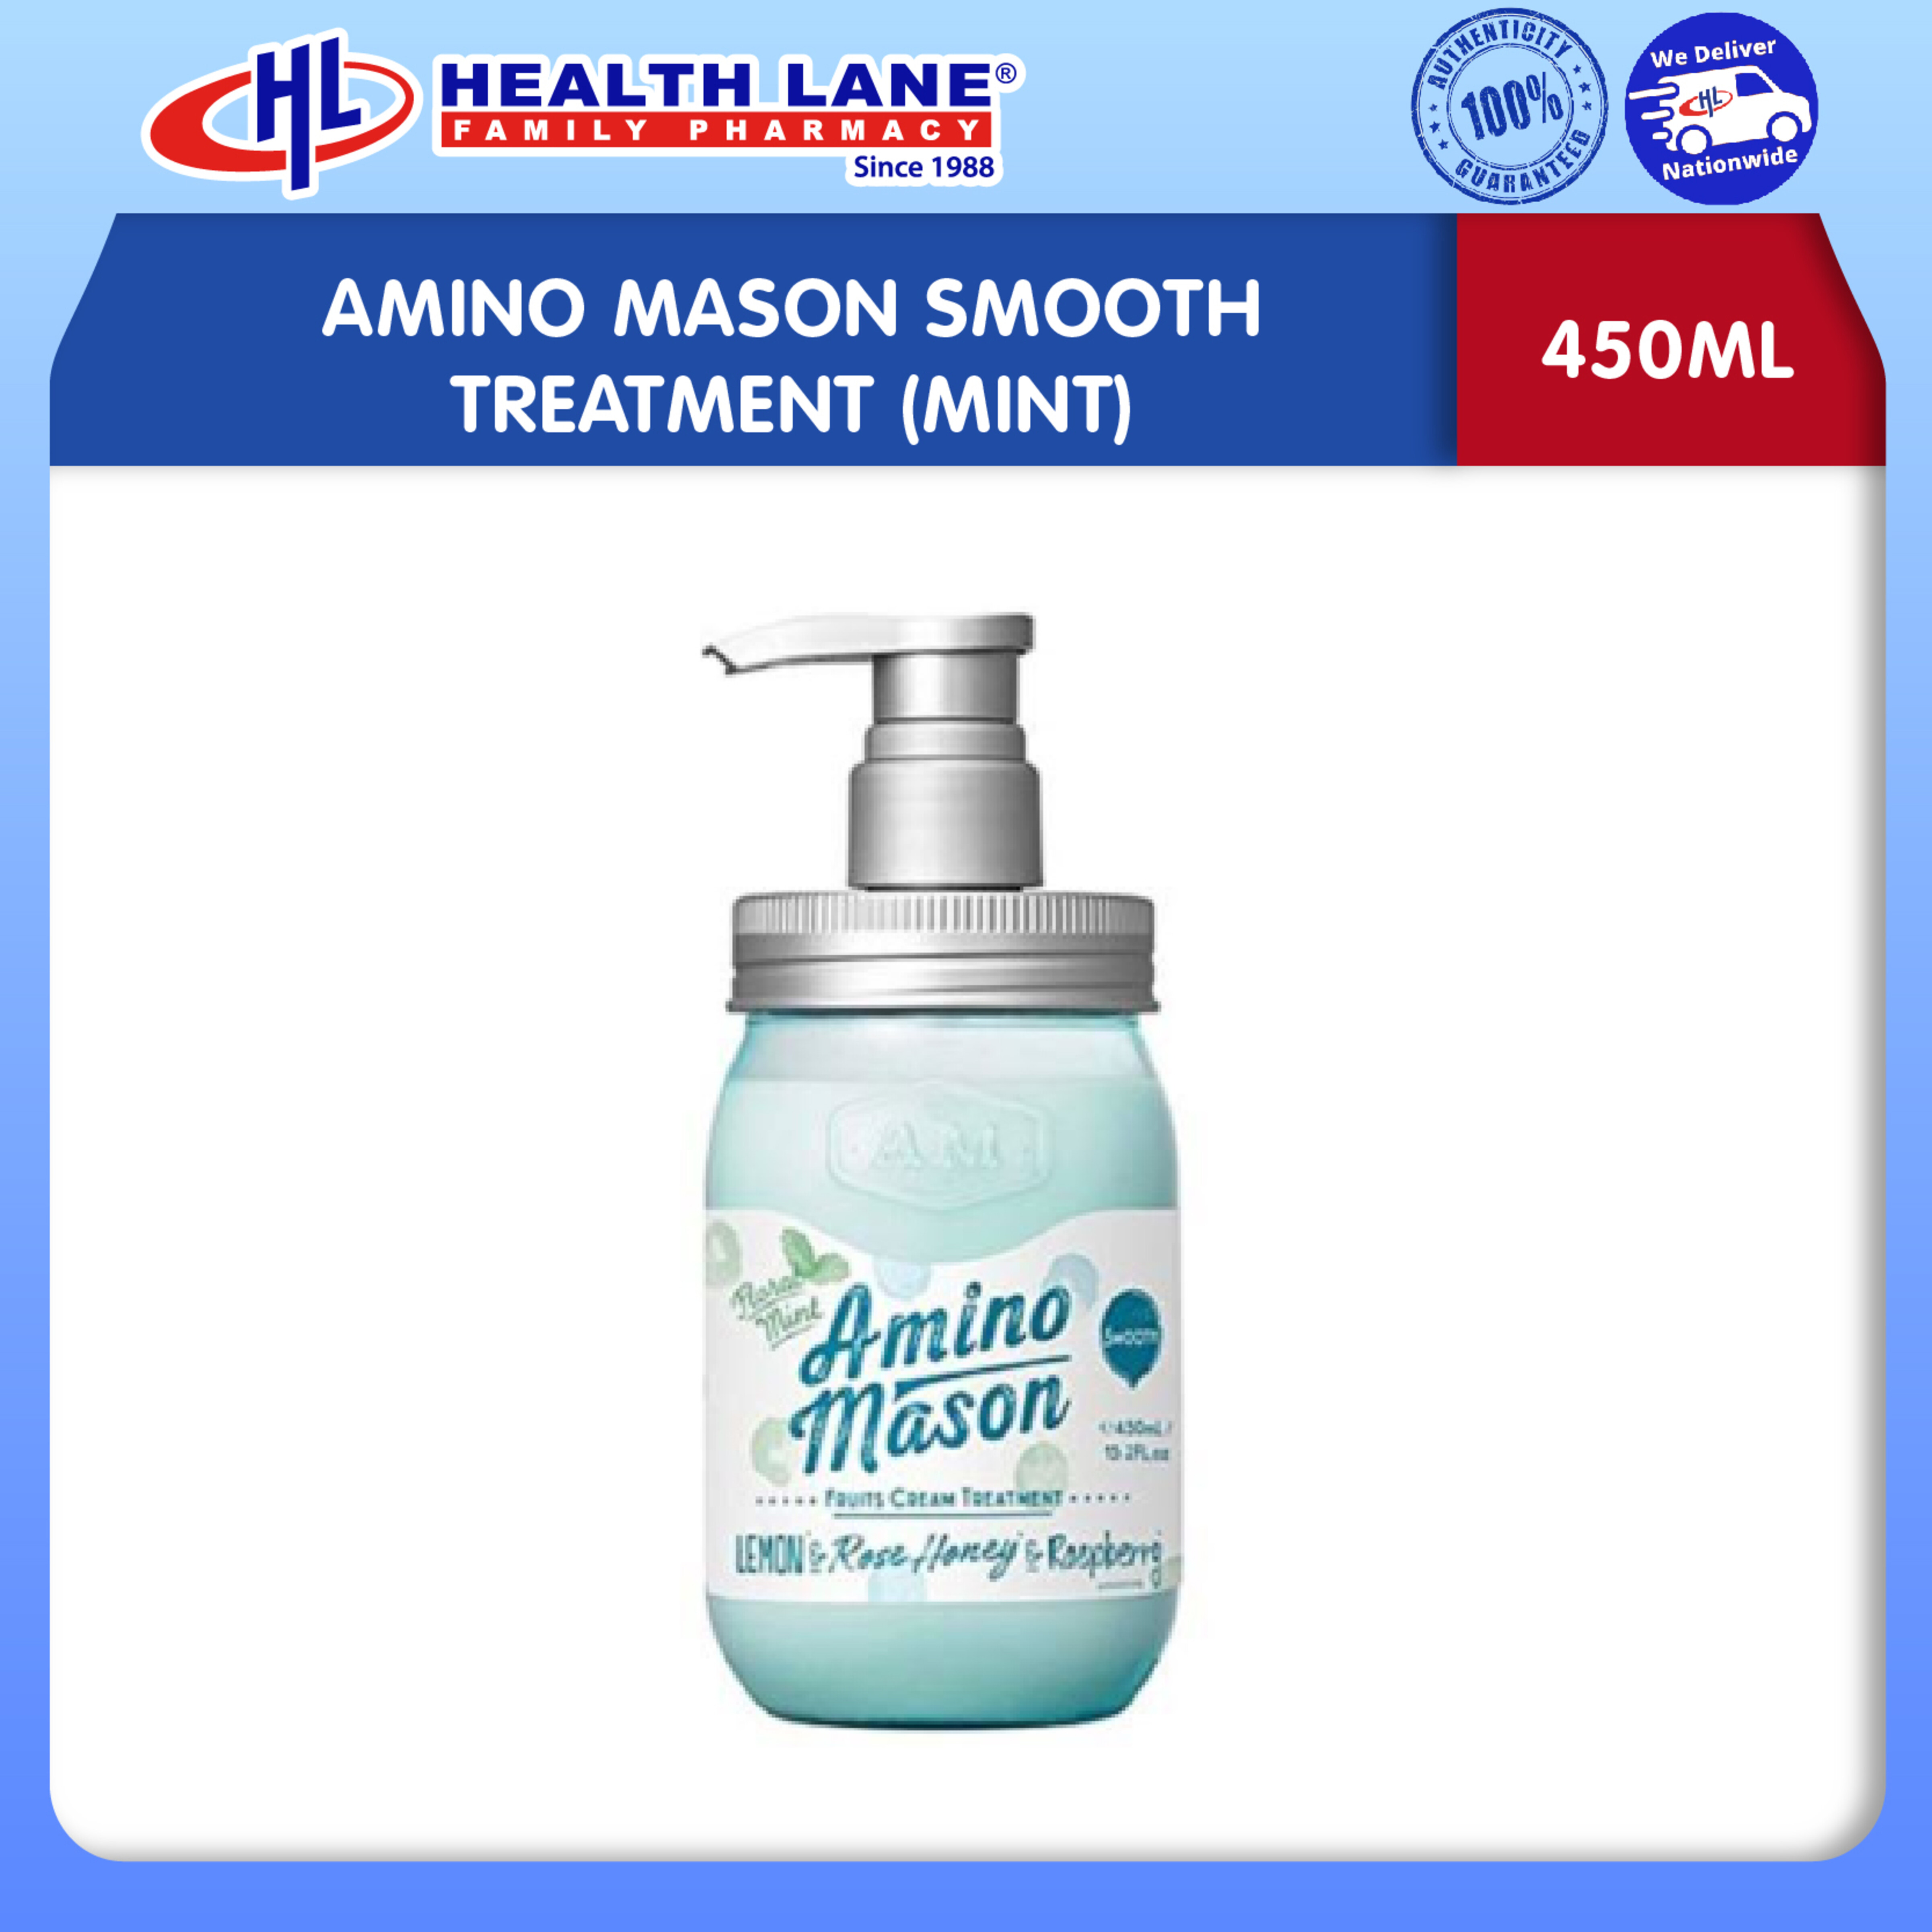 AMINO MASON SMOOTH TREATMENT (MINT) (450ML)